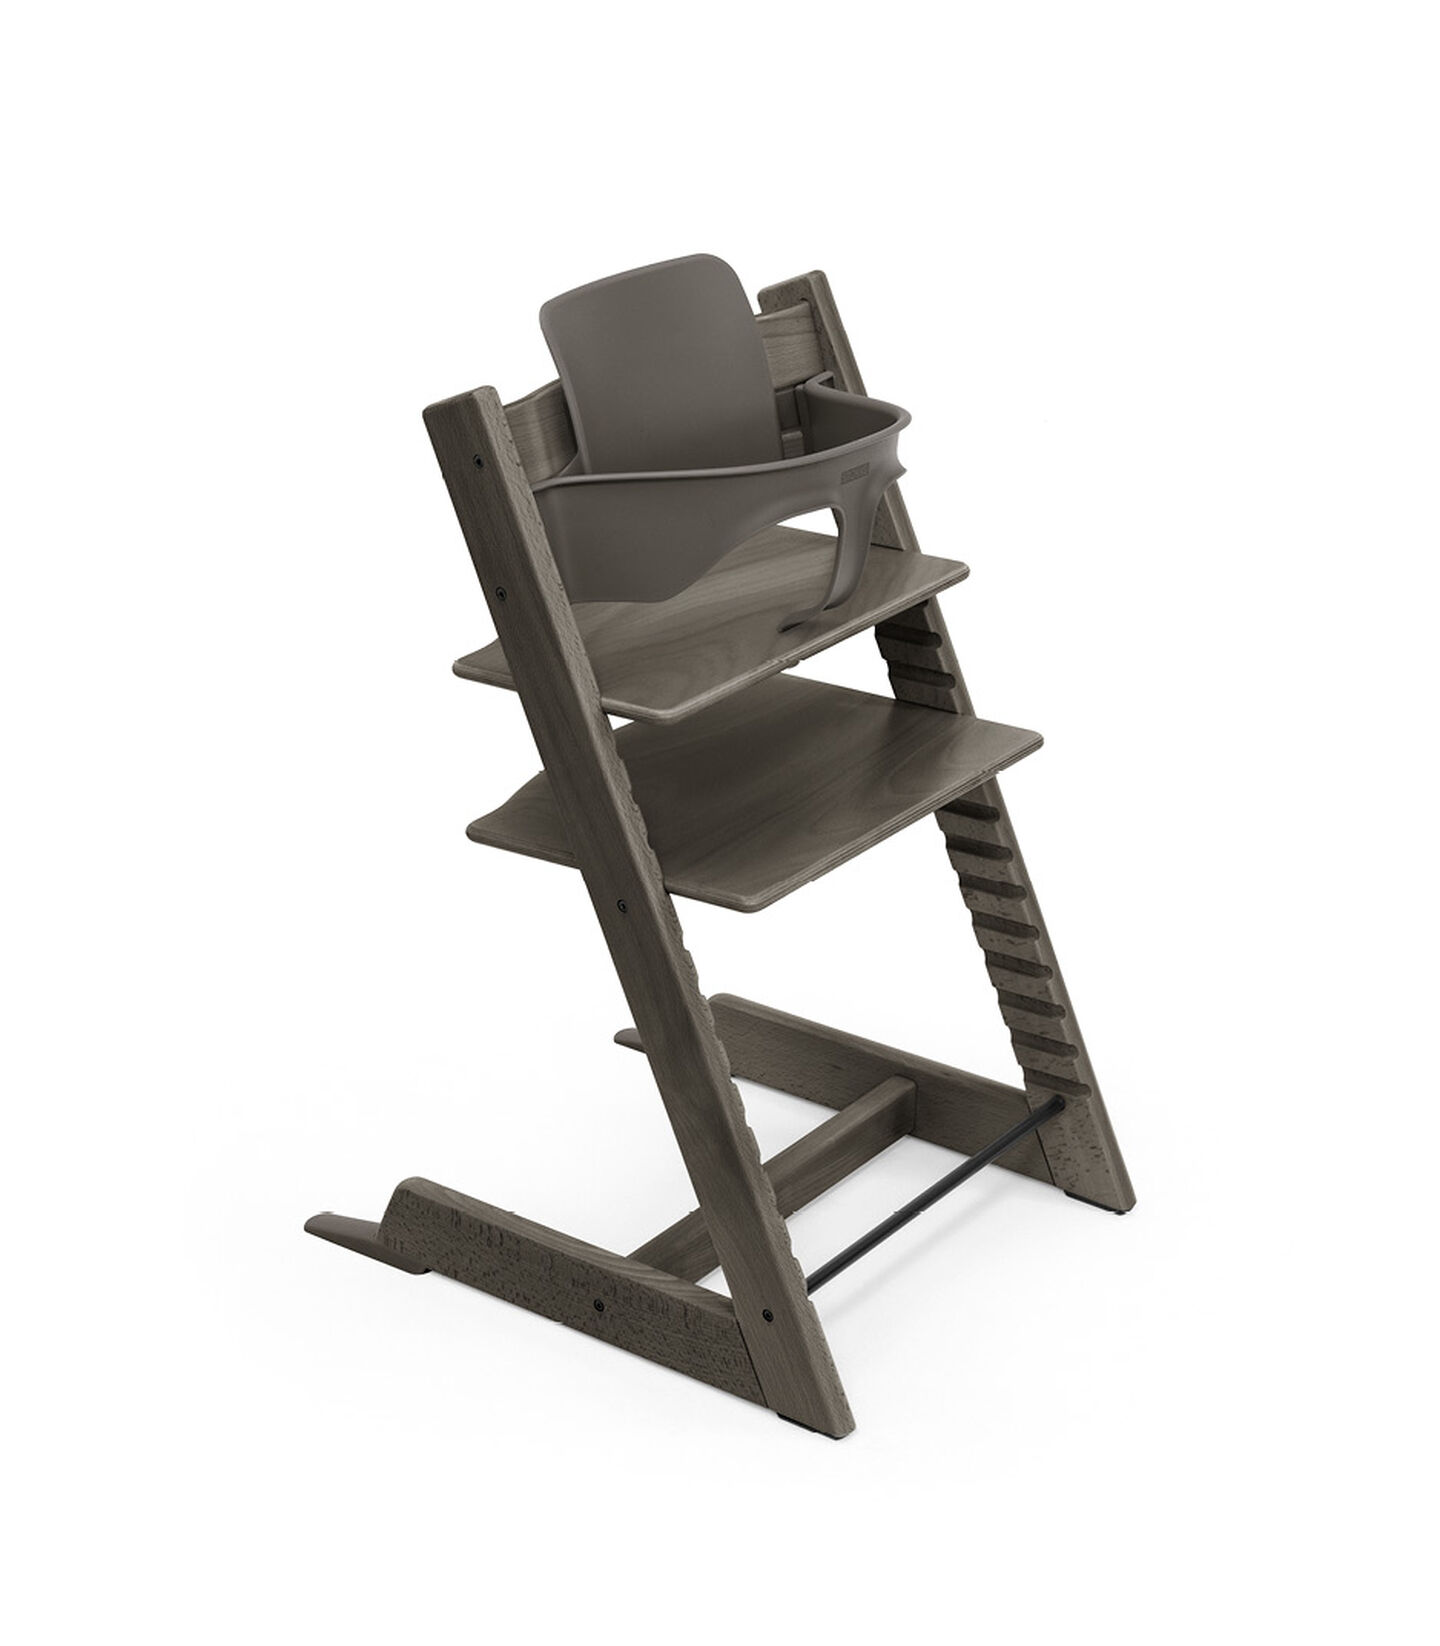 Krzesło Tripp Trapp® Hazy Grey, Hazy Grey, mainview view 9